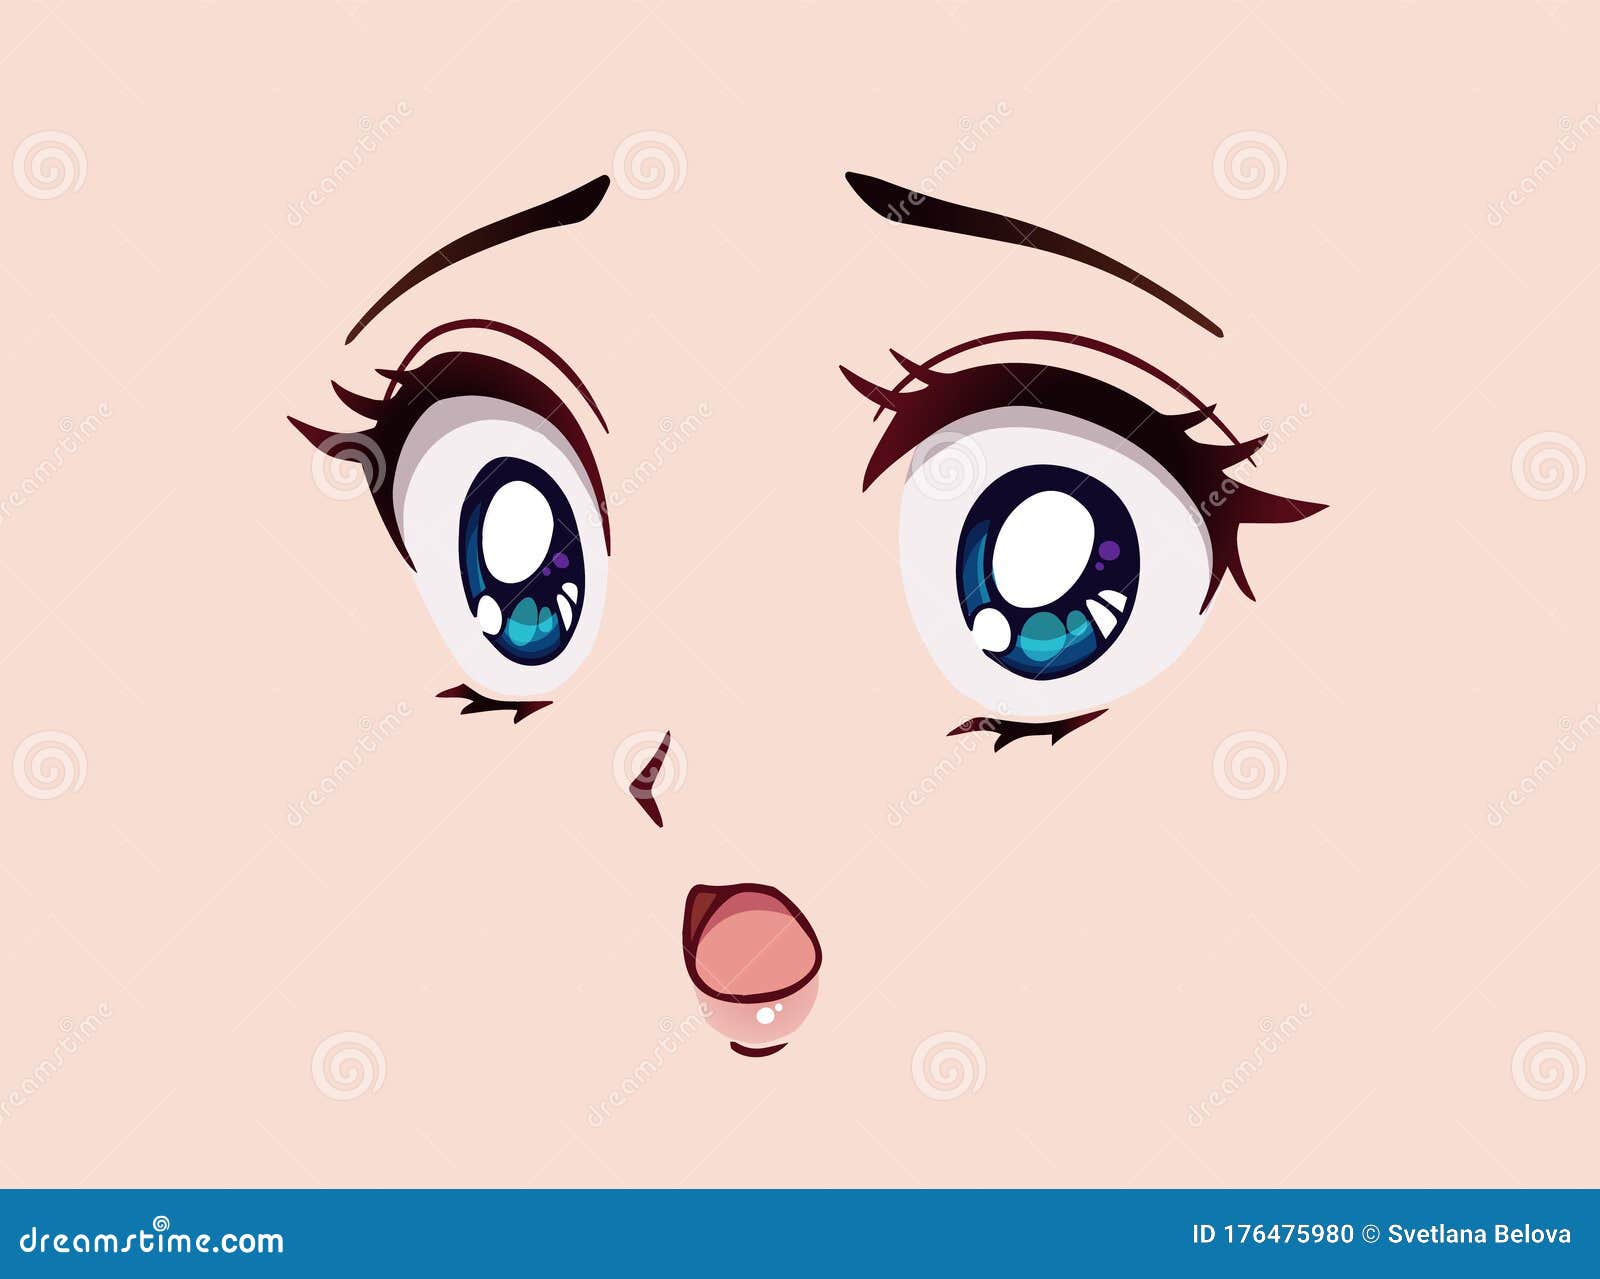 Cara de anime feliz. manga estilo grandes olhos azuis, nariz